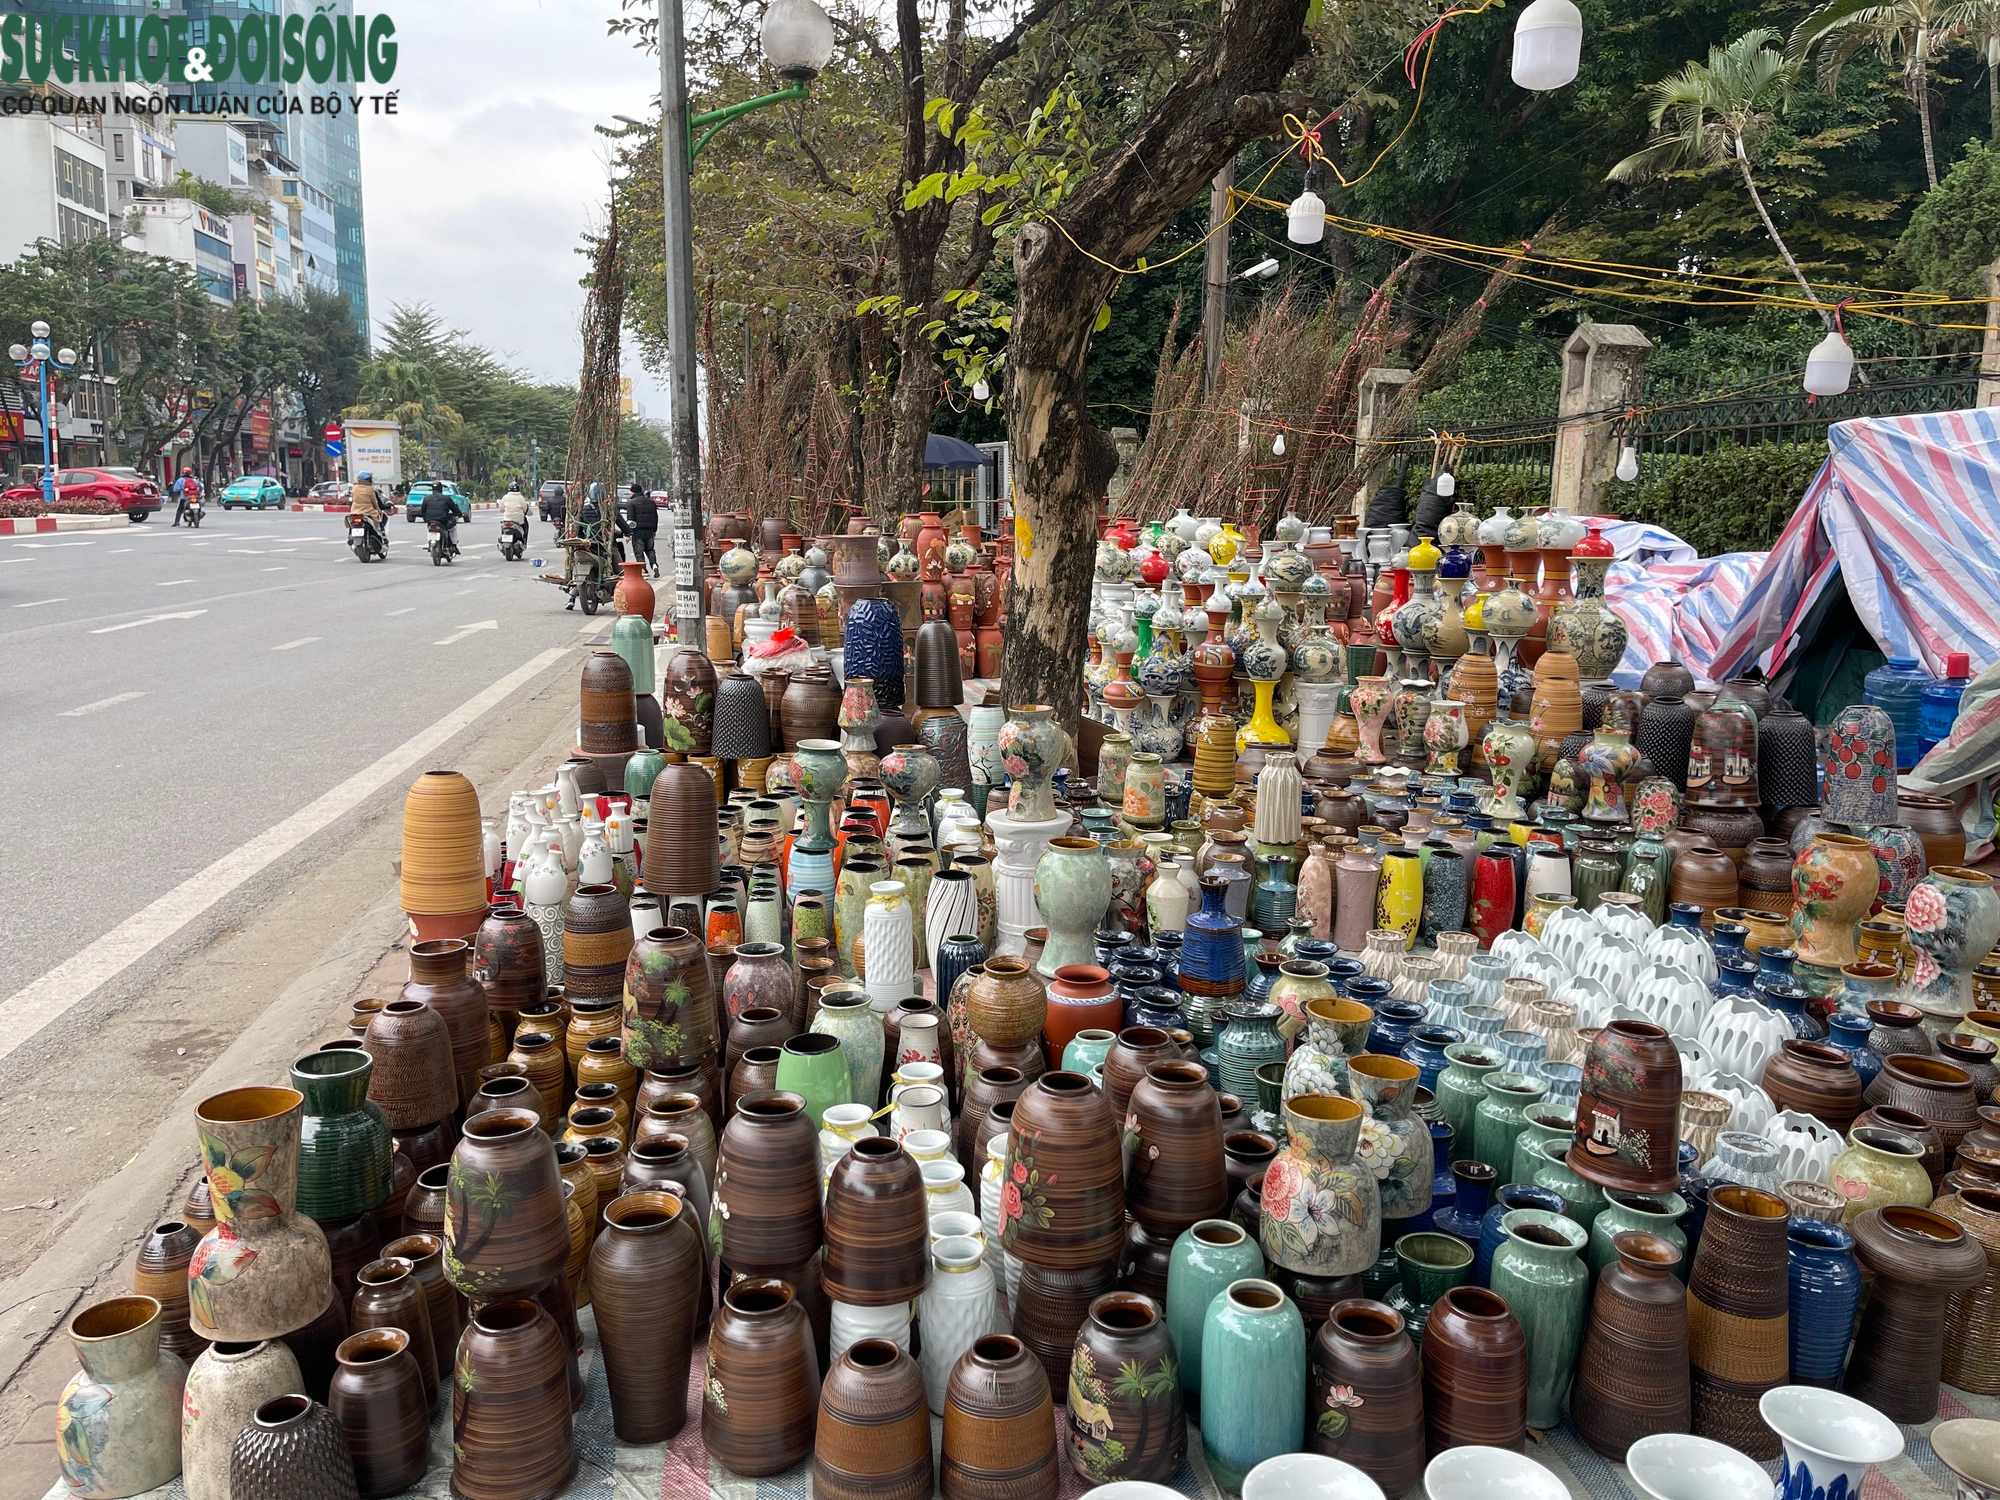 Vỉa hè Hà Nội thành chợ bán đào quất, 'đẩy' người đi bộ xuống đường- Ảnh 4.